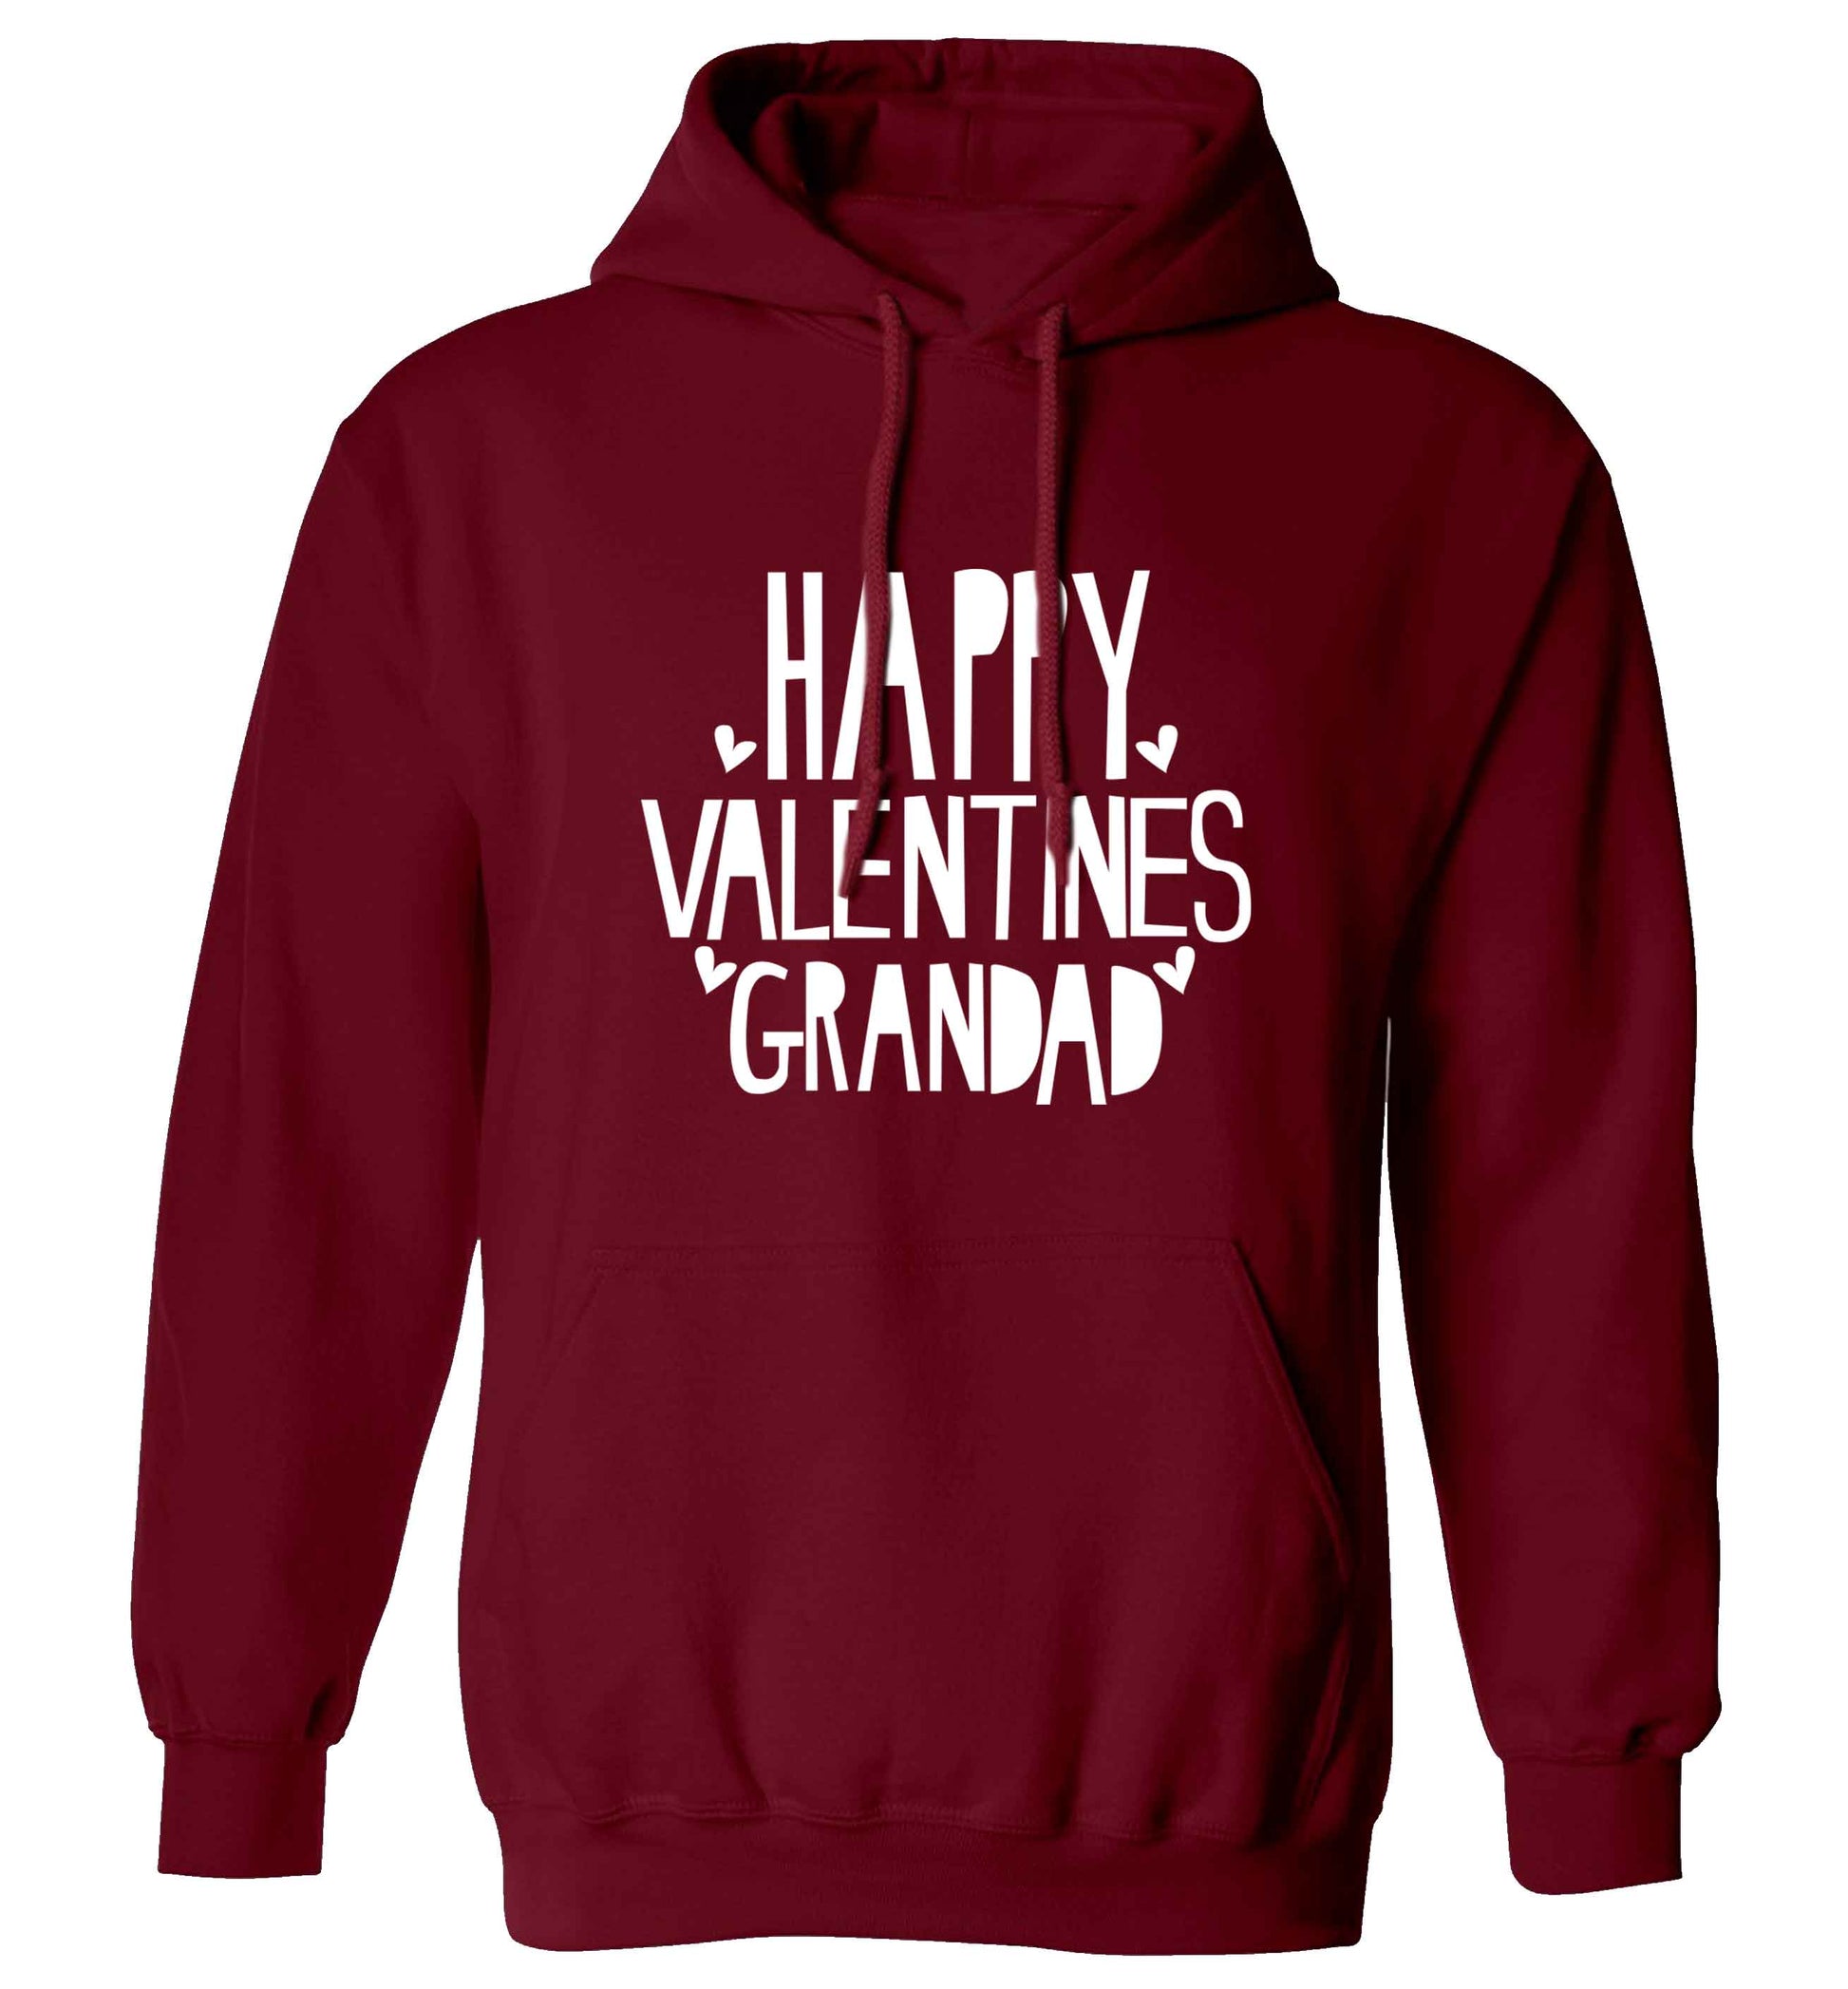 Happy valentines grandad adults unisex maroon hoodie 2XL